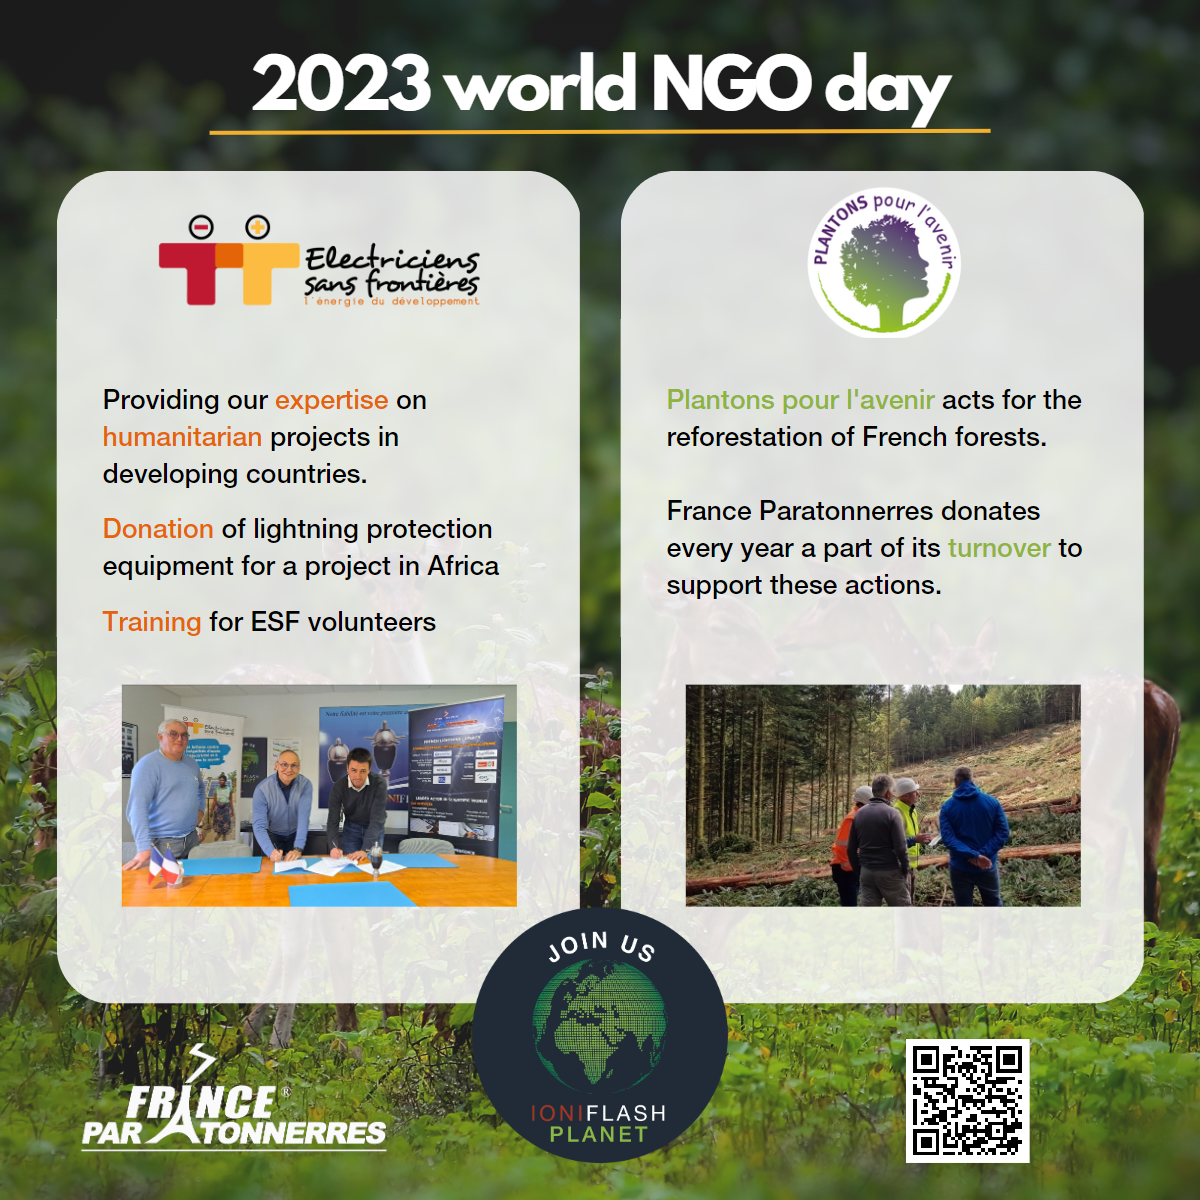 2023 World NGO Day